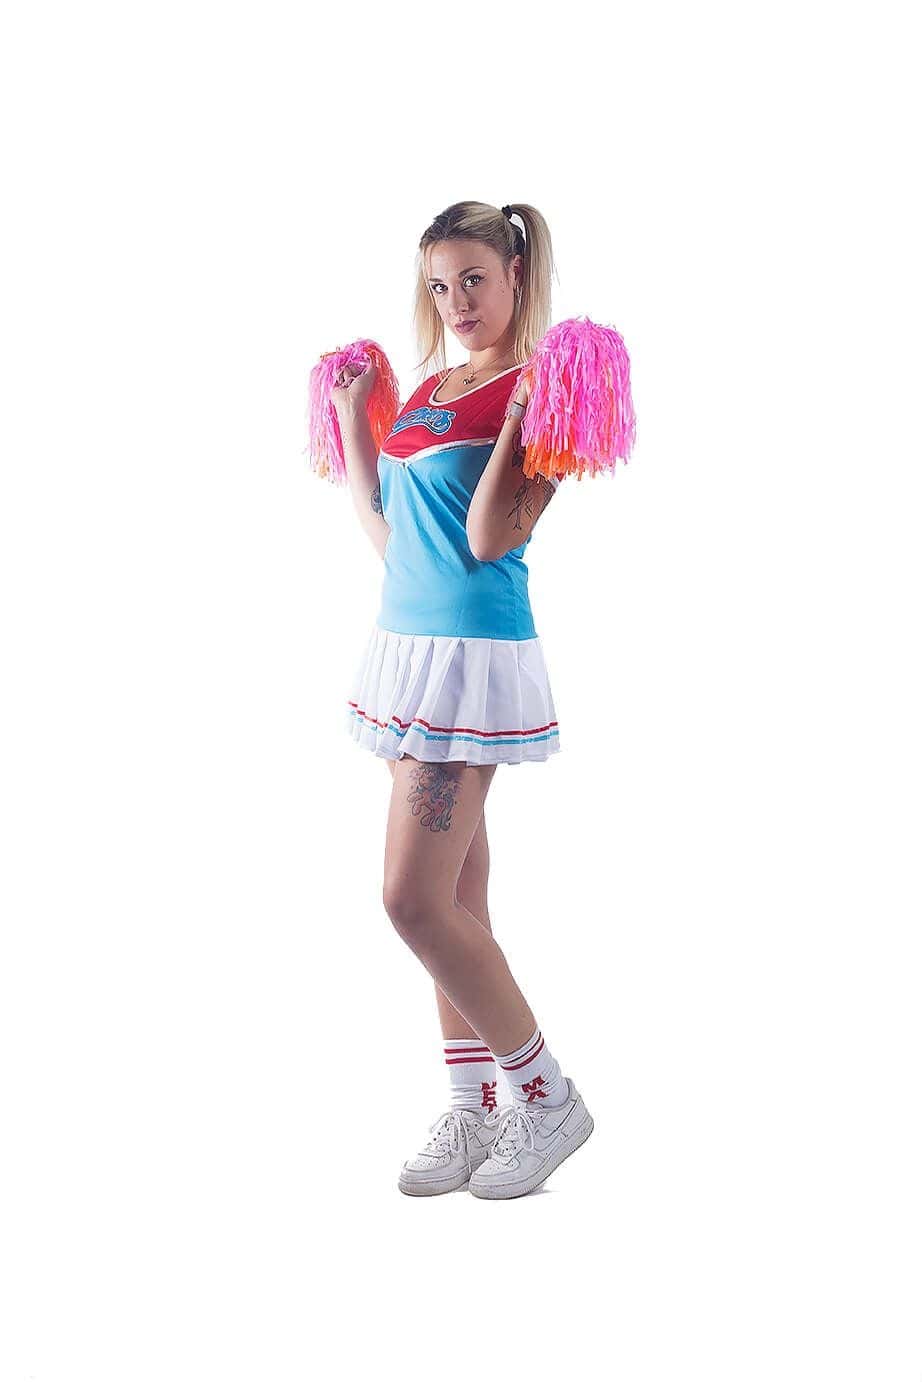 Déguisement de Cheerleader Bleu pour femme - Taille au choix - Jour de Fête  - Moins de 30 euros - Bonnes Affaires